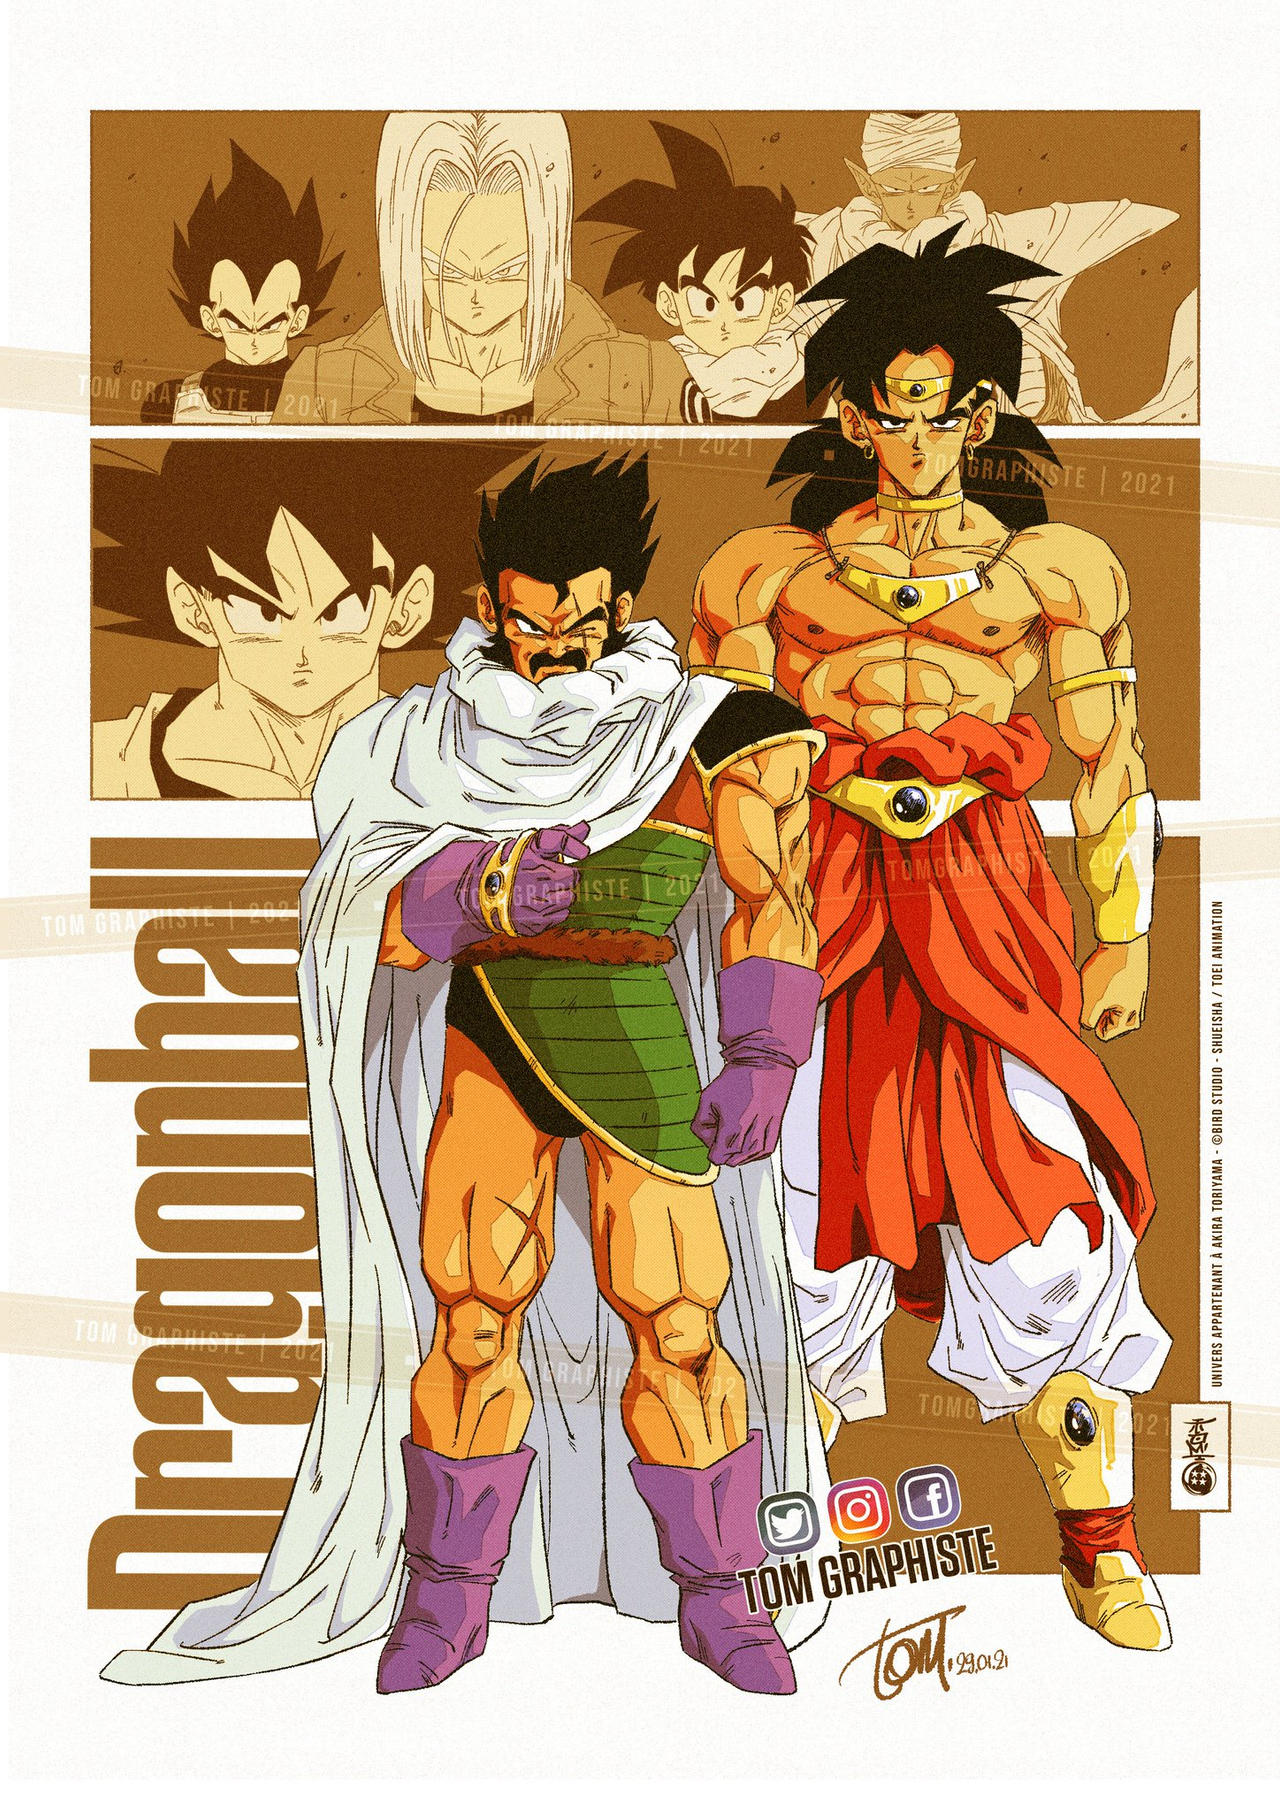 Dragon Ball Super Broly Manga by Saiyanking02 on DeviantArt